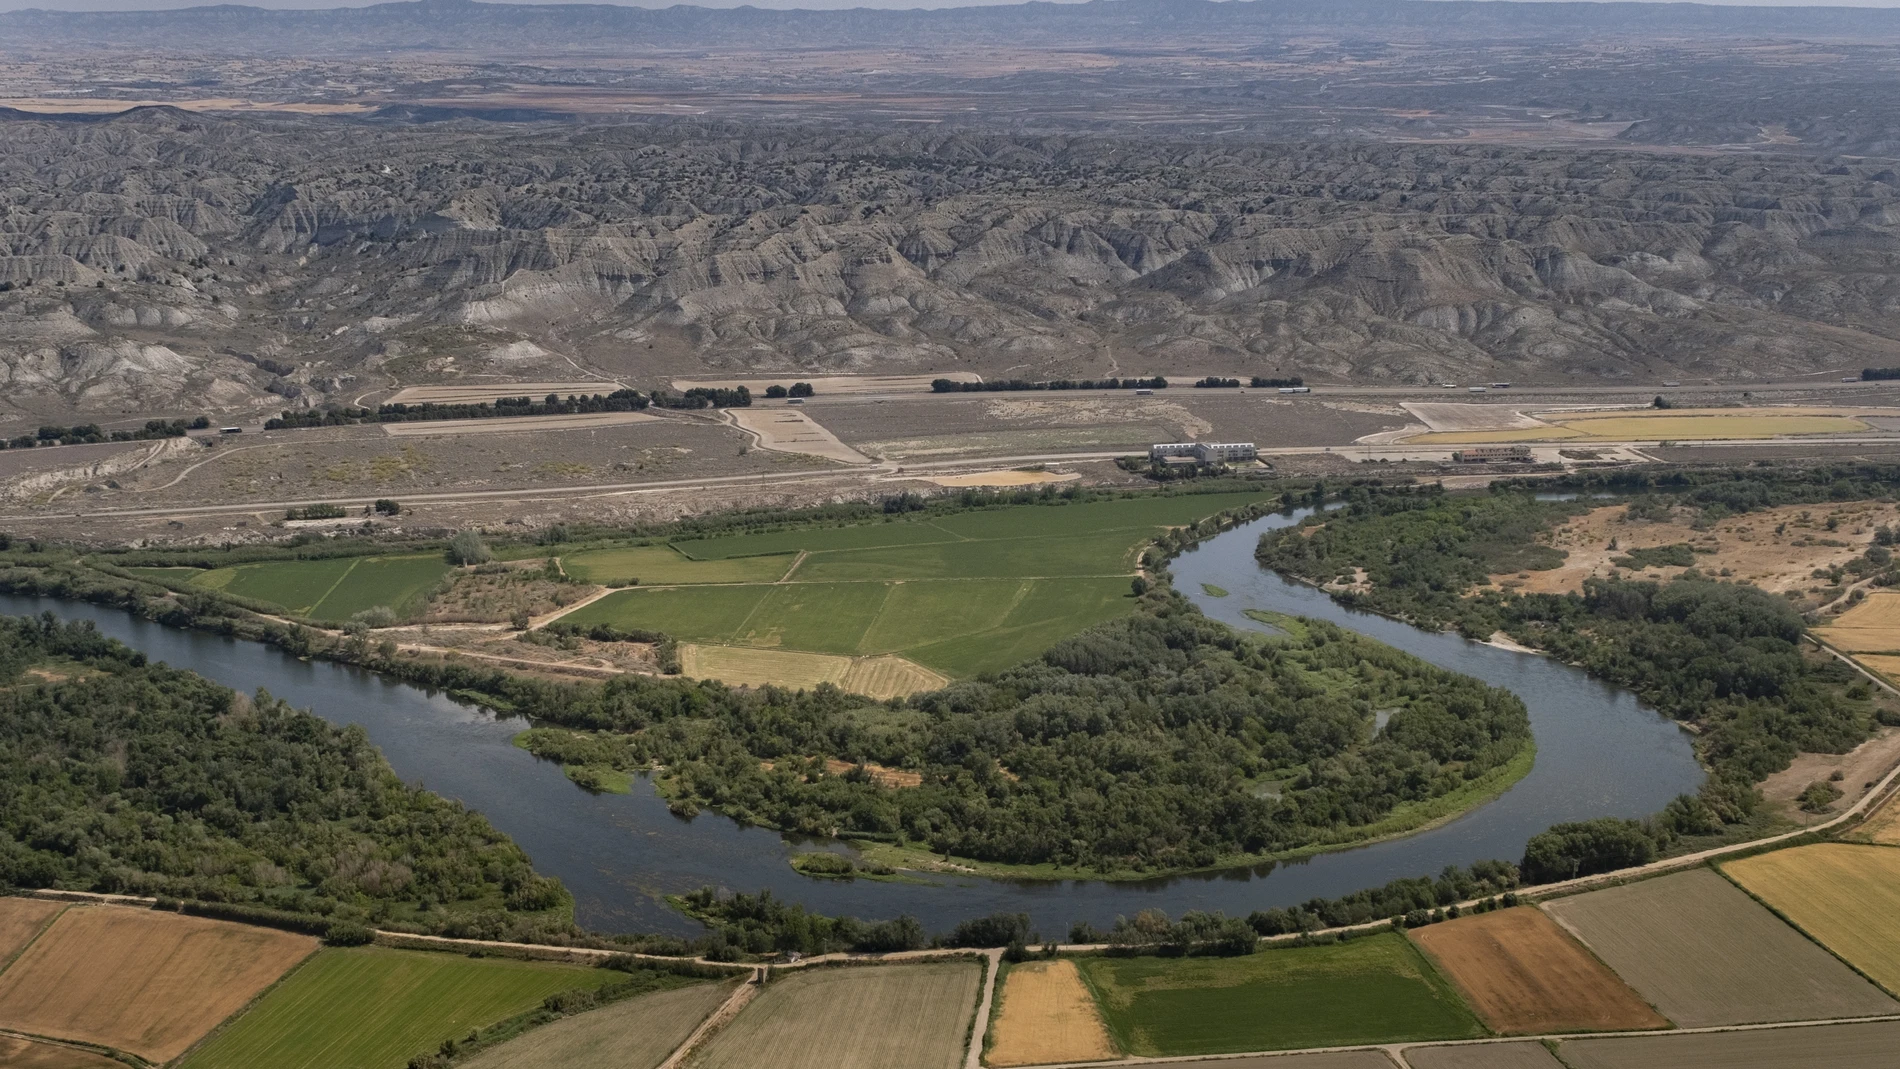 Cultivos de regadío intensivo en torno a un meandro del río Ebro a su paso por Osera de Ebro, en Zaragoza. Al fondo, el desierto de los Monegros.